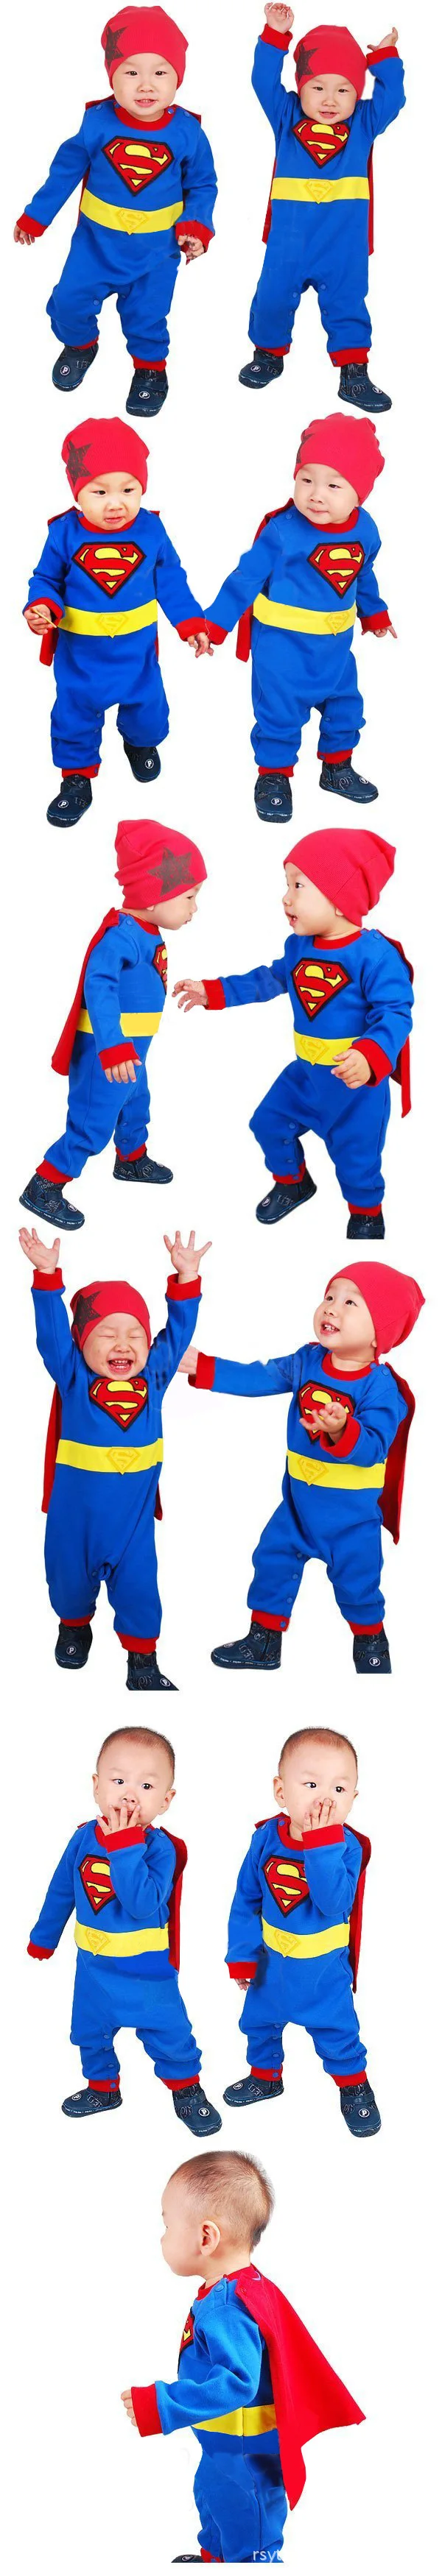 Комбинезоны для маленьких мальчиков и девочек из хлопка; Осенний комбинезон с длинными рукавами и накидкой в стиле Супермена; костюм для малышей